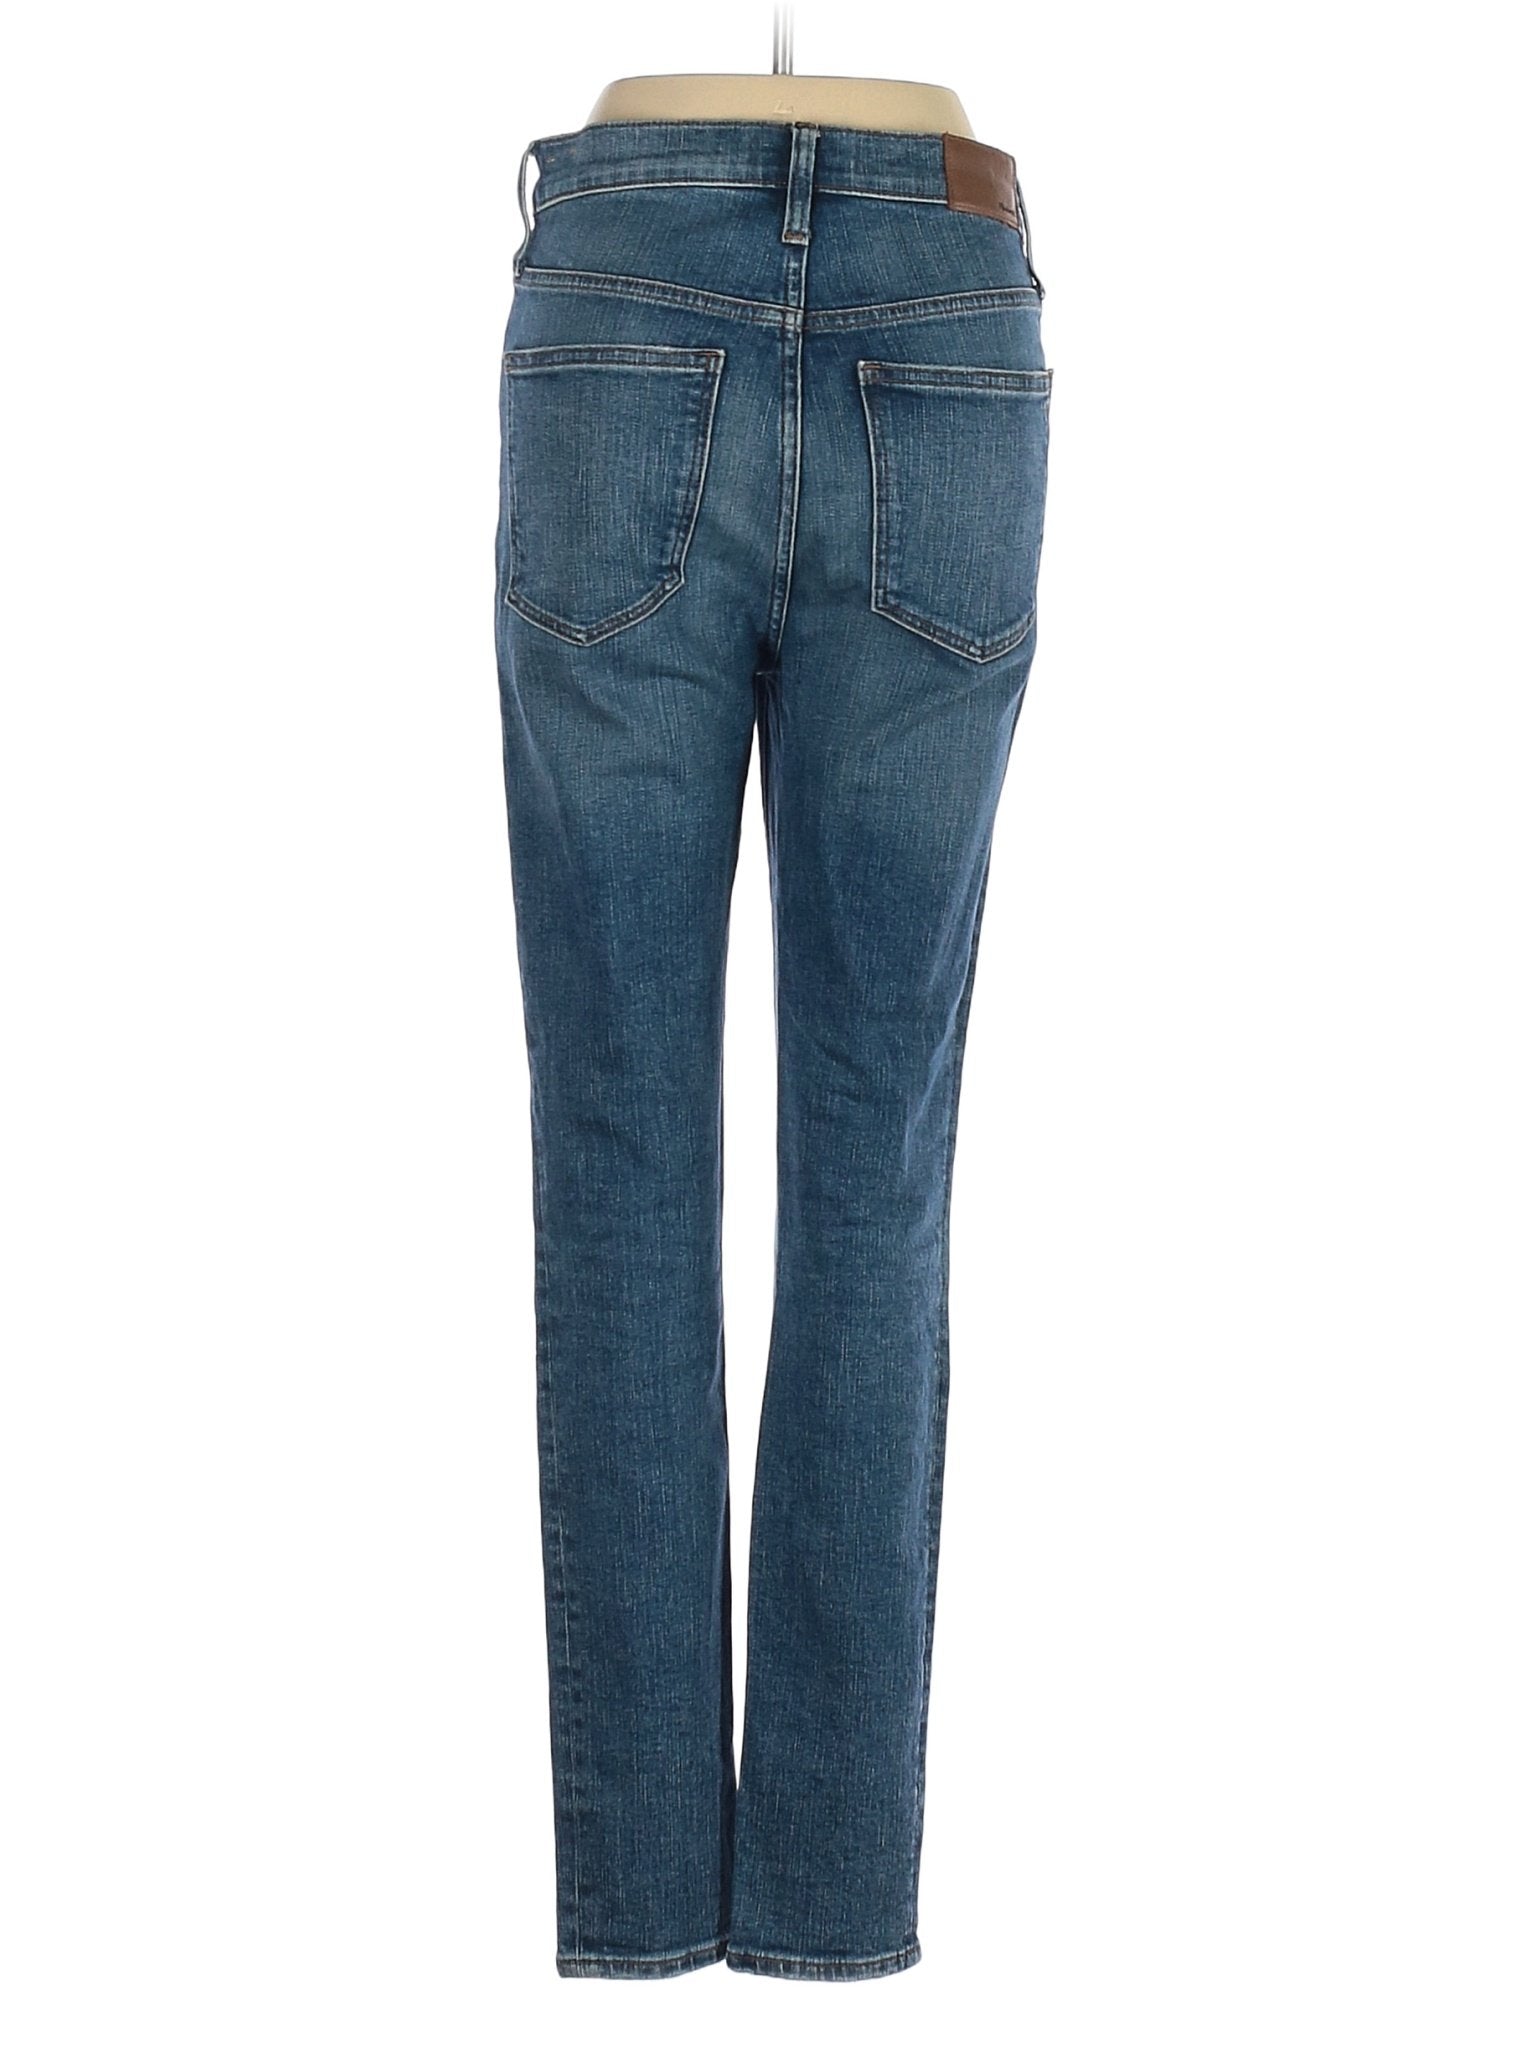 High-Rise Straight-leg Jeans in Dark Wash waist size - 27